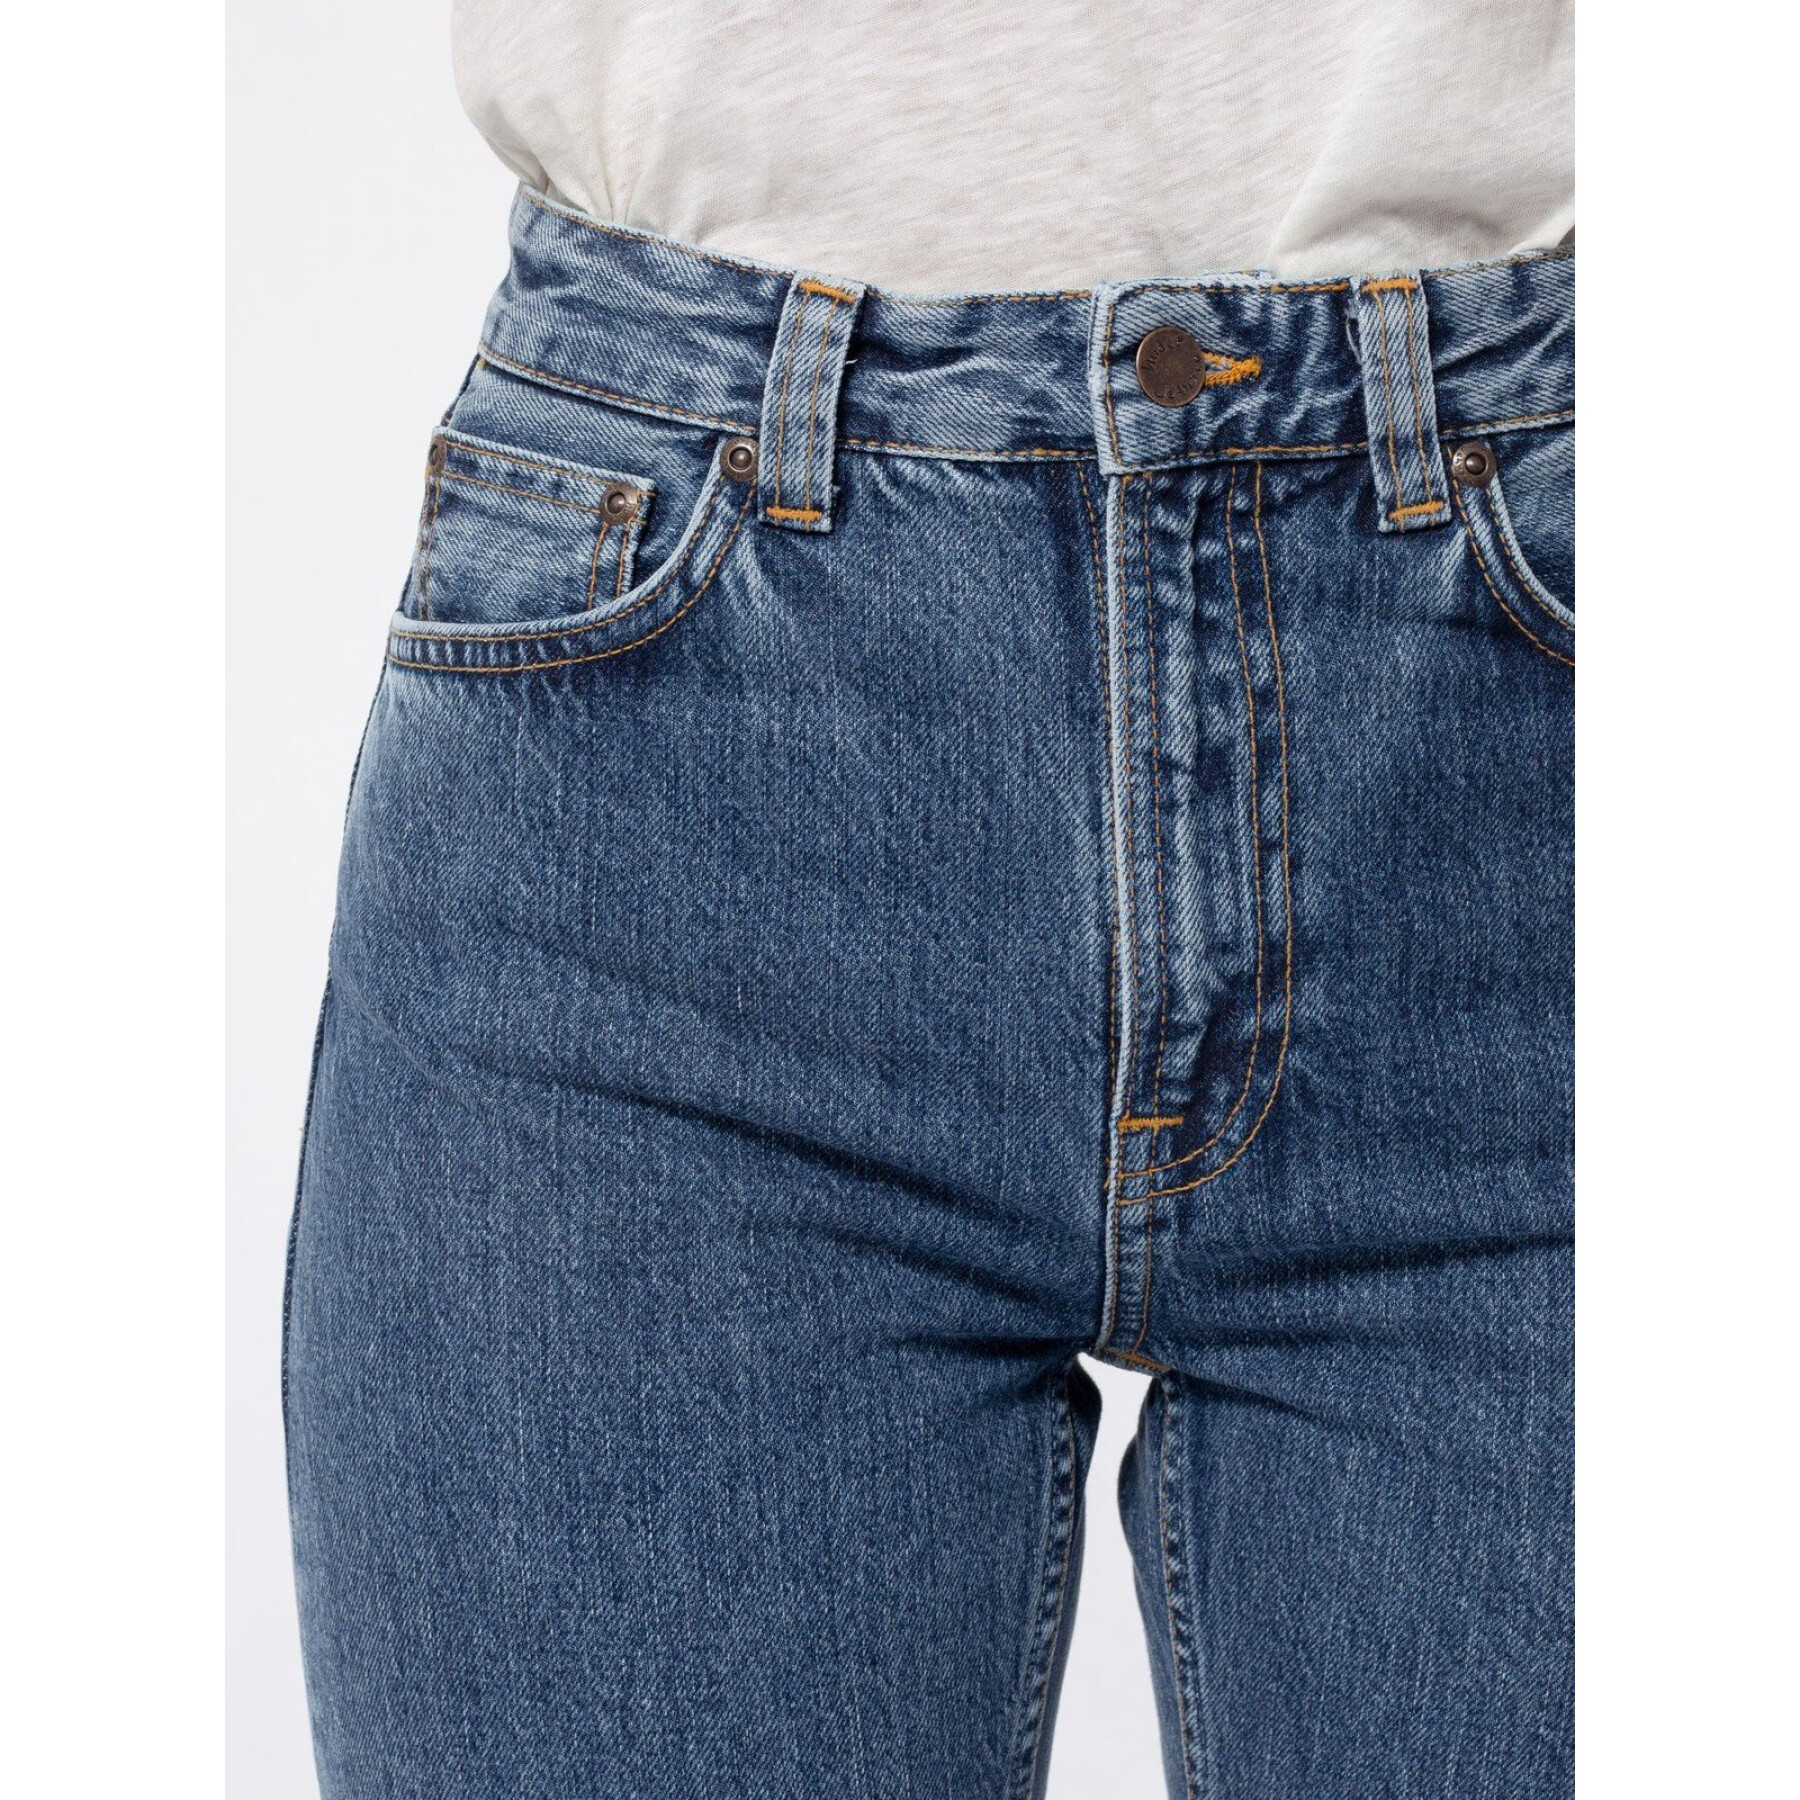 Women's jeans Nudie Jeans Breezy Britt